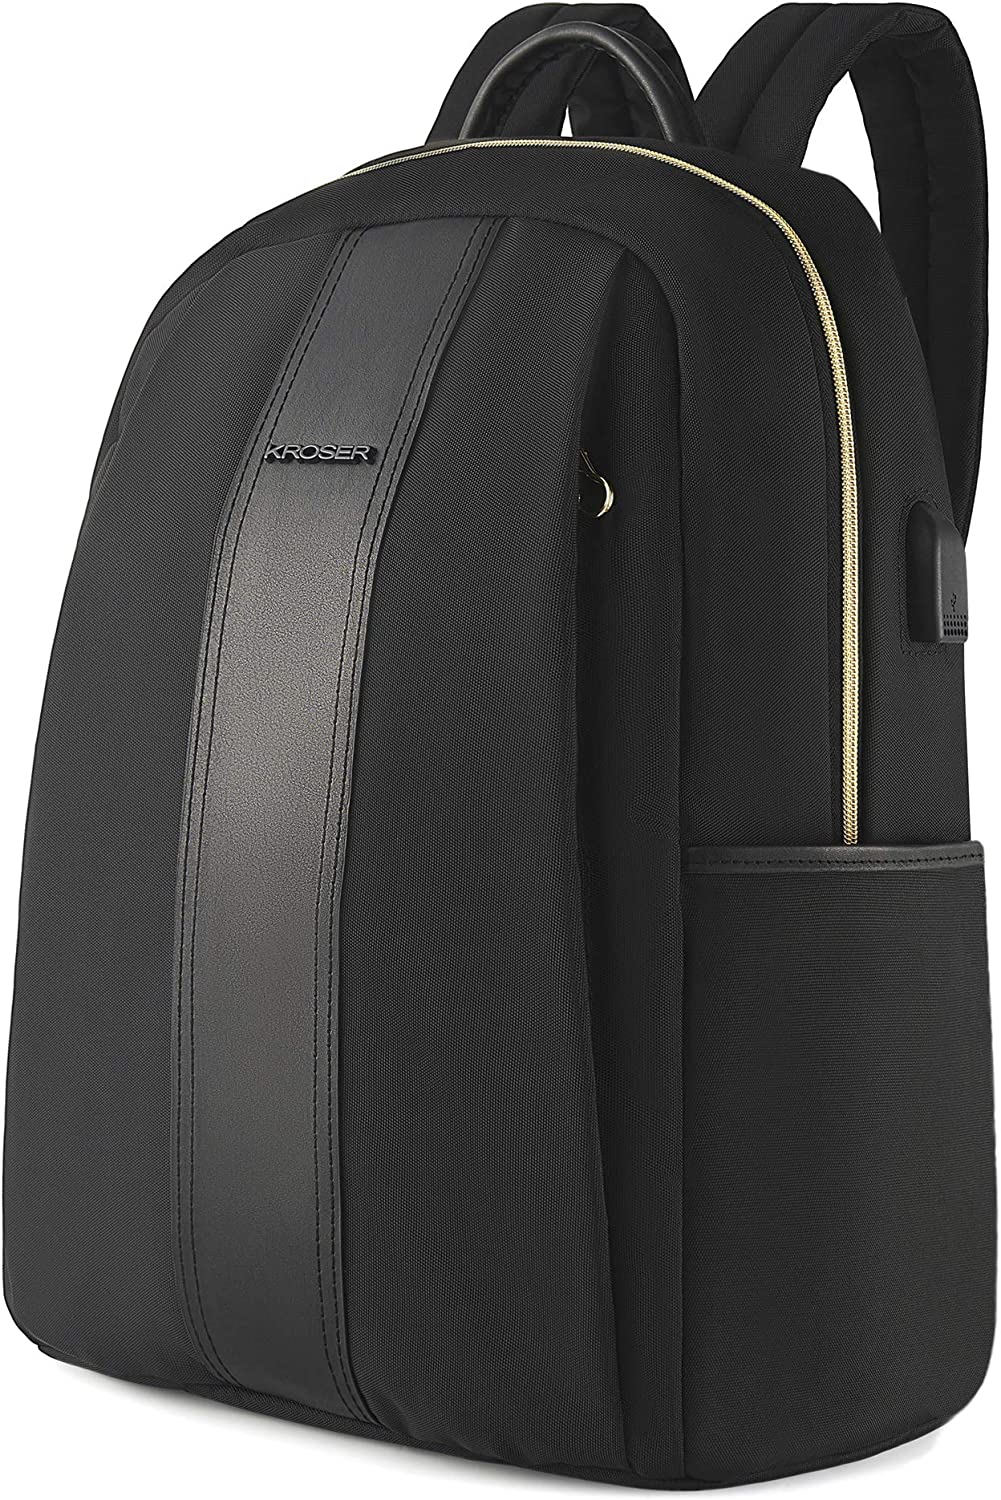 کوله پشتی با محفظه لپ تاپ KROSER مدل SKK-810 - ارسال ۱۰ الی ۱۵ روز کاری